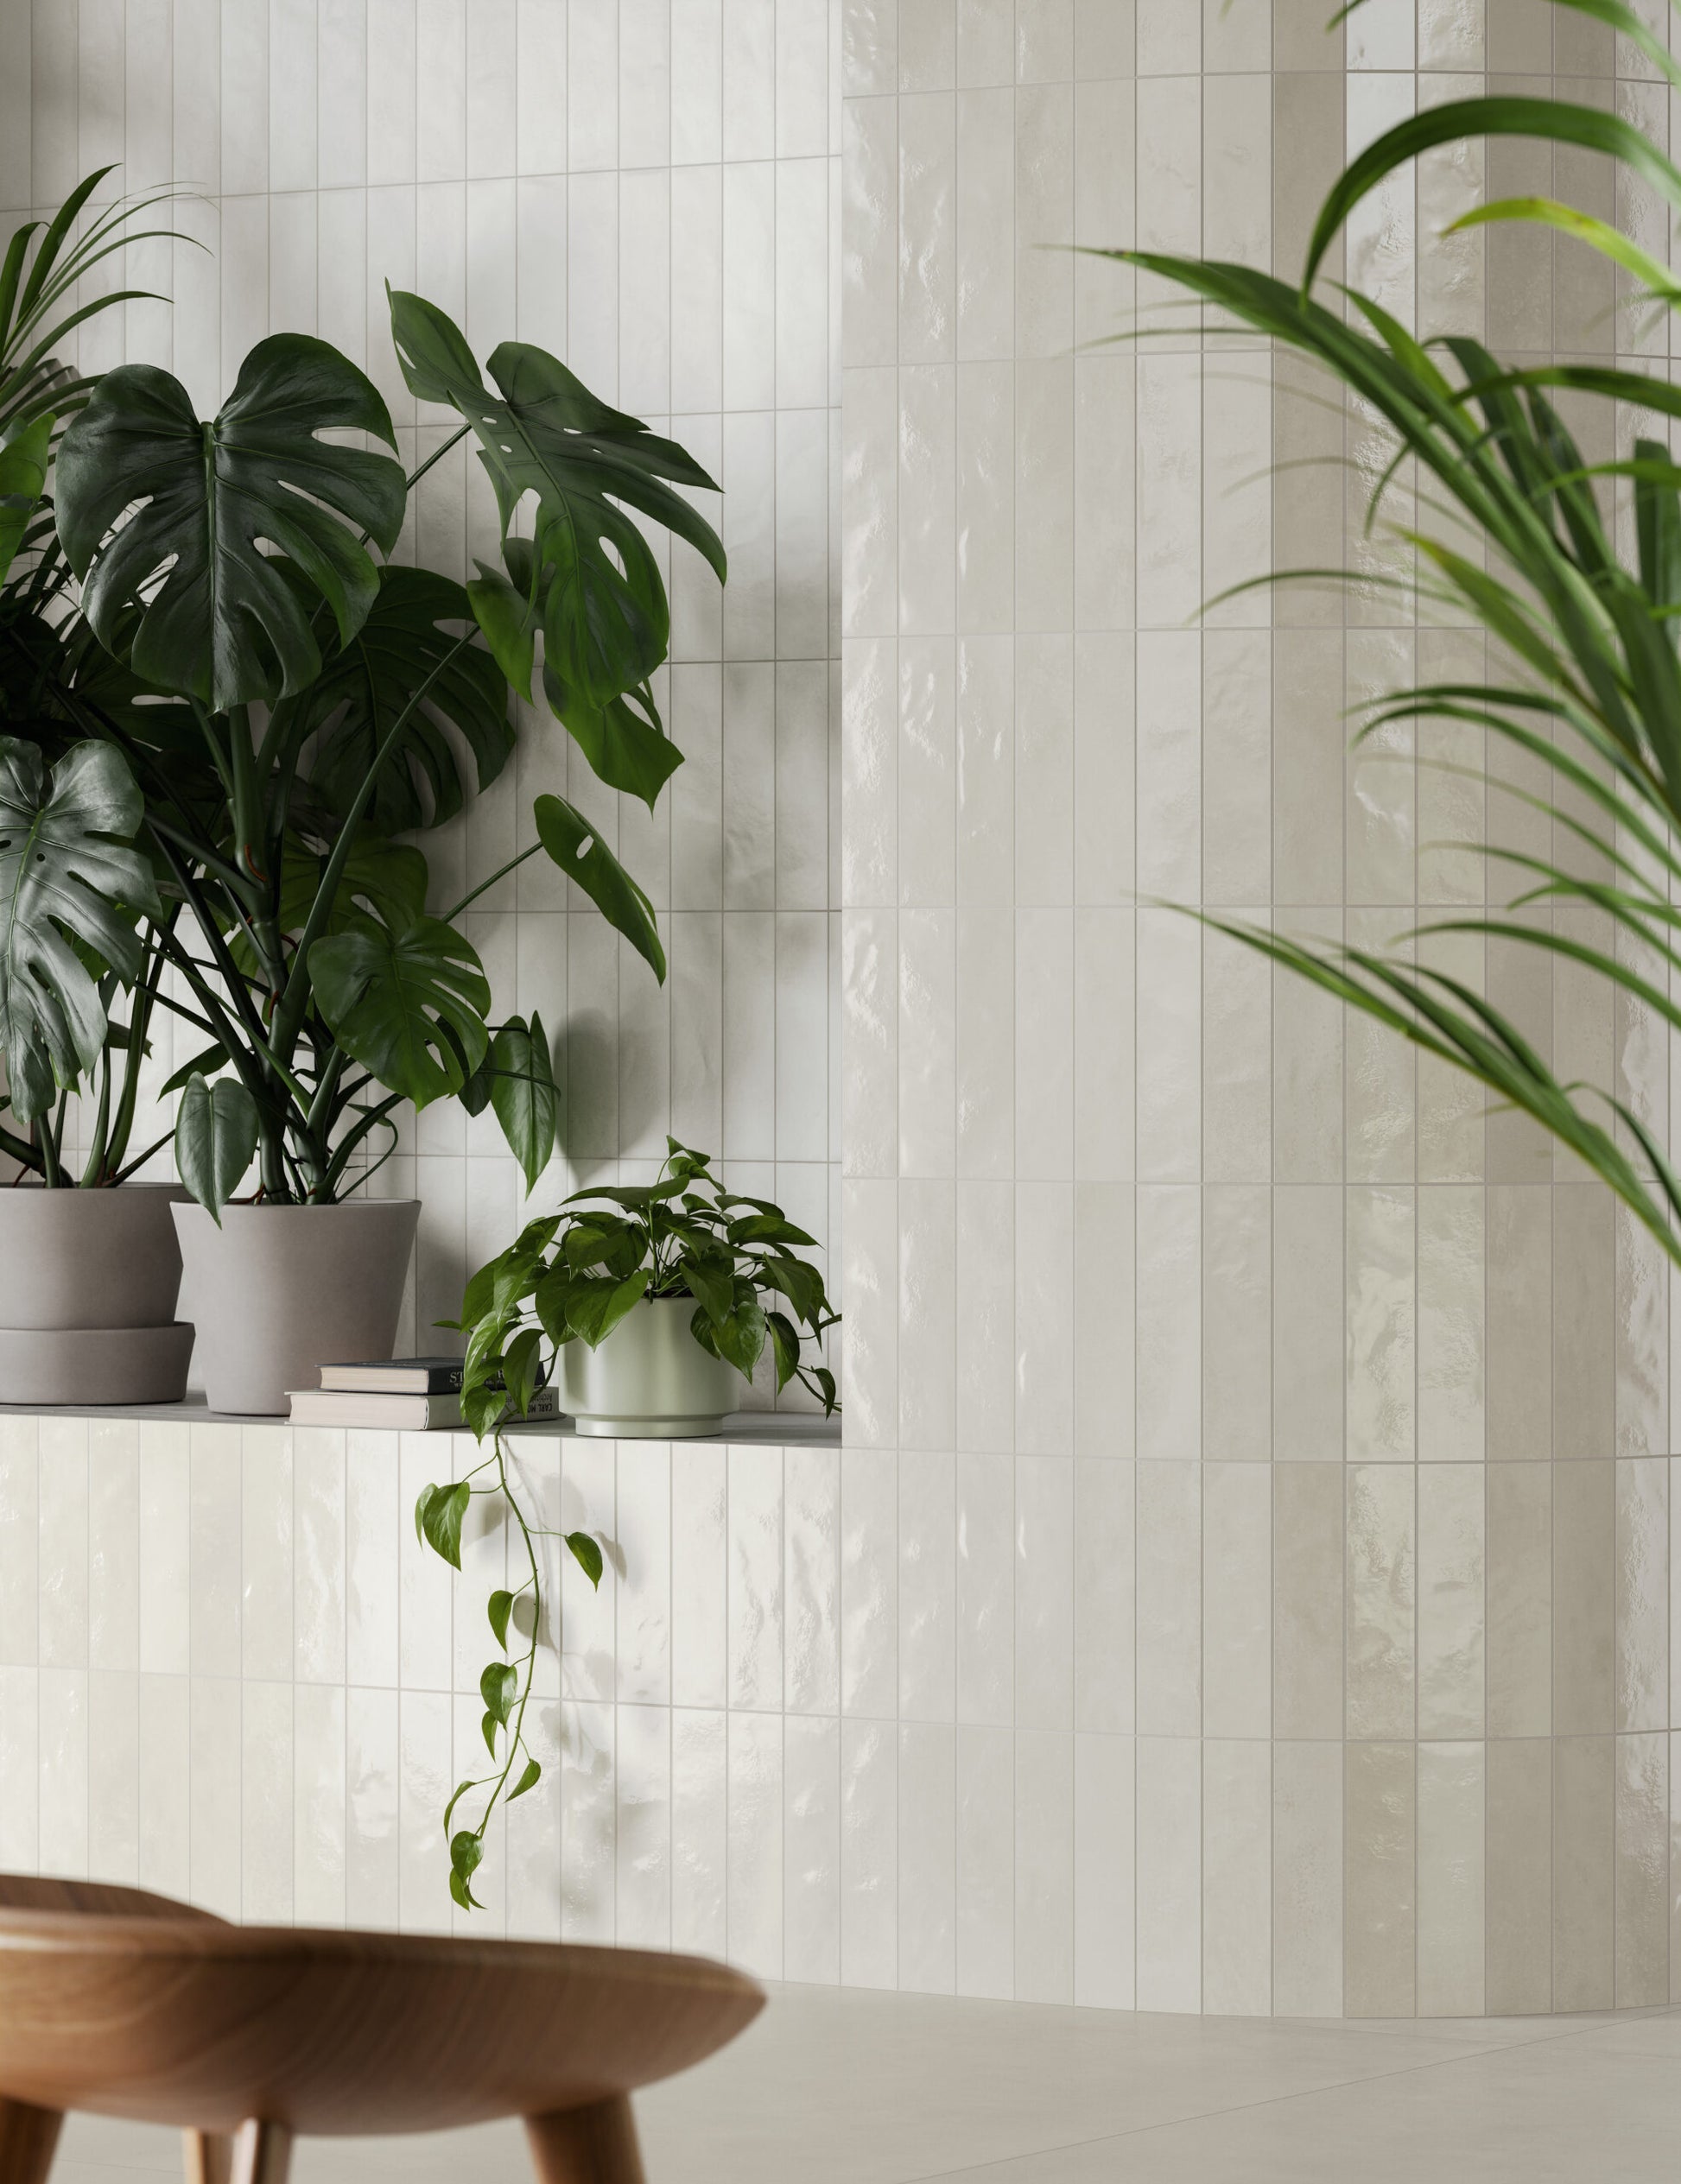 Muro con acabado blanco brillo y vegetación interior